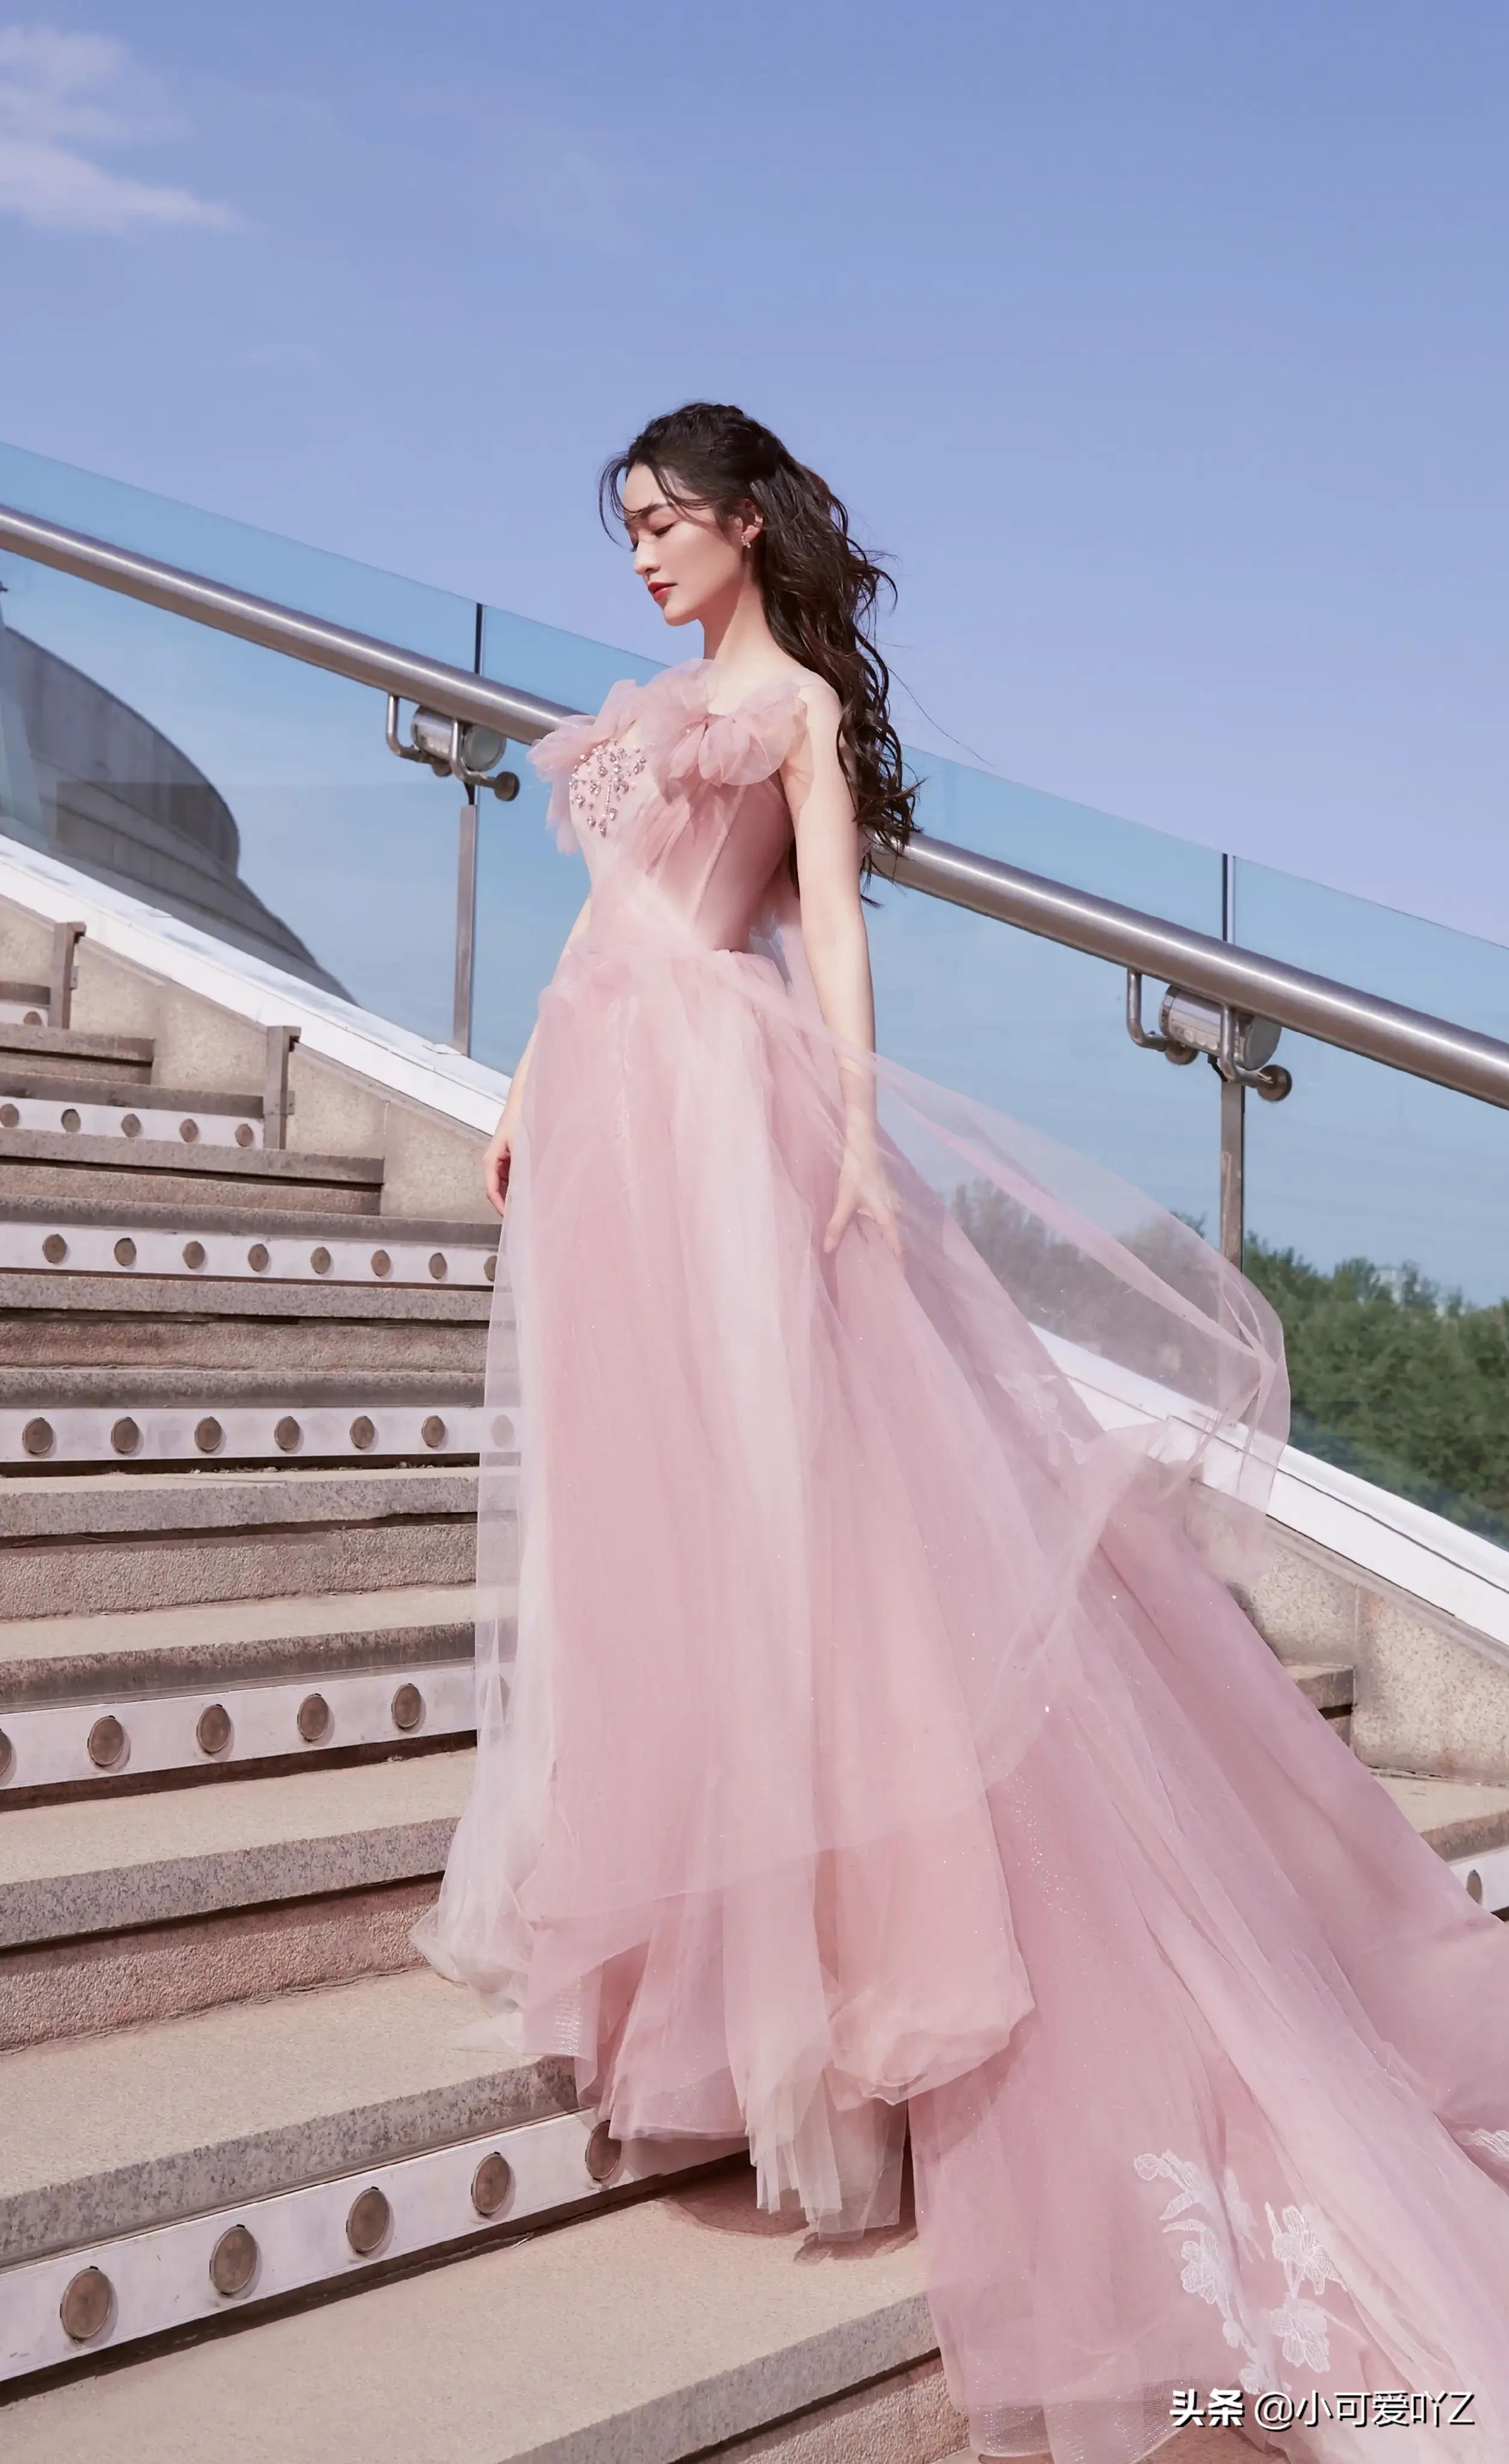 李沁，粉红色纱裙，卷发飘飘，美艳绝伦